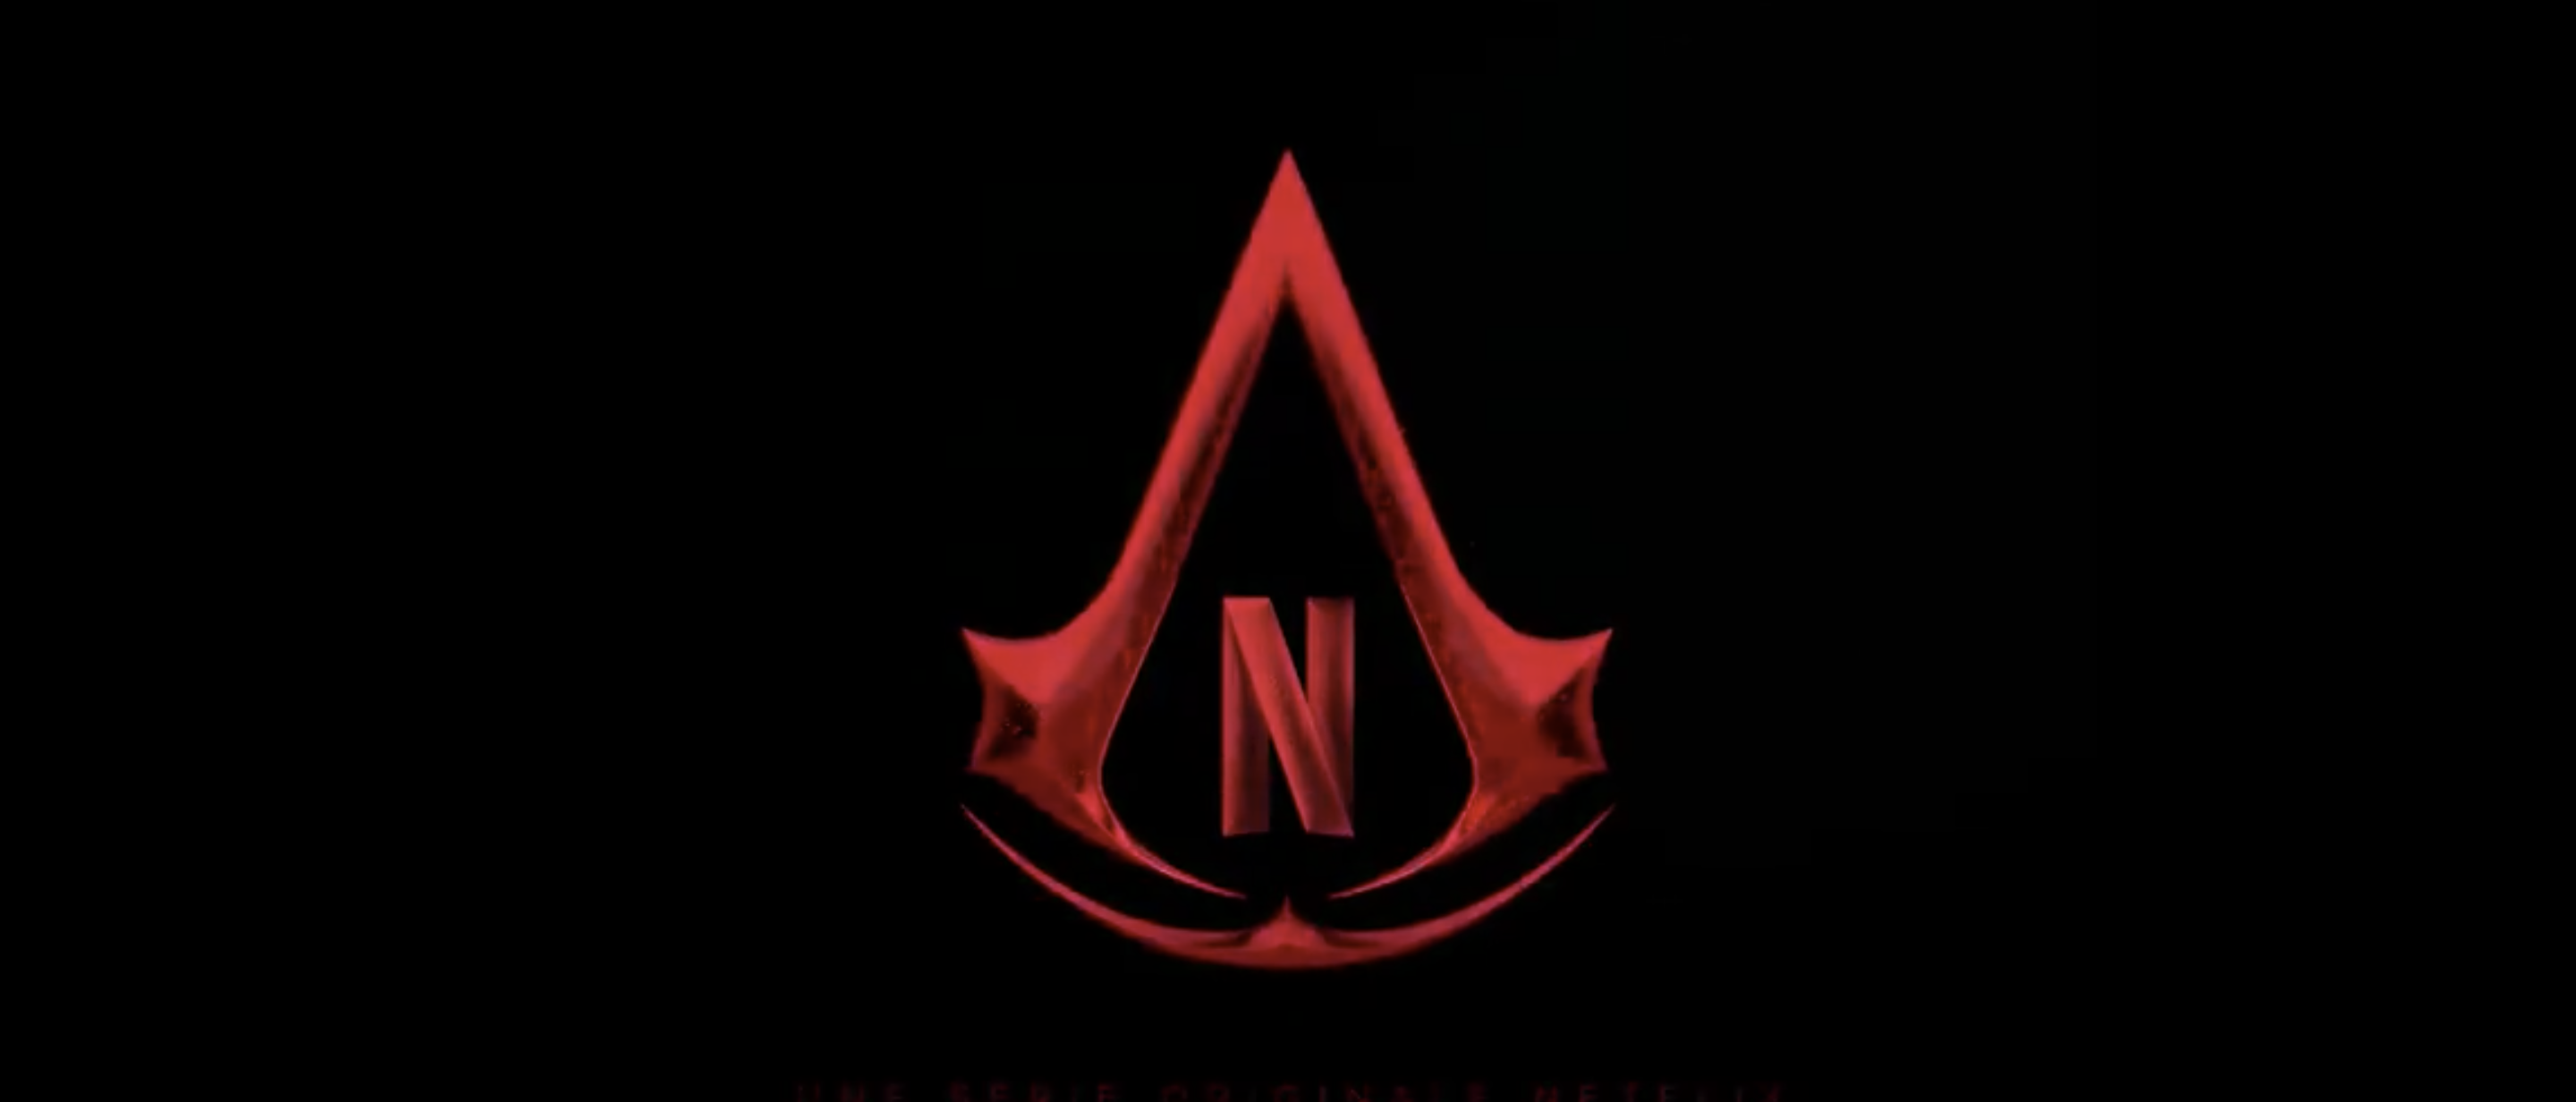 Assassin's Creed : Netflix annonce une série !